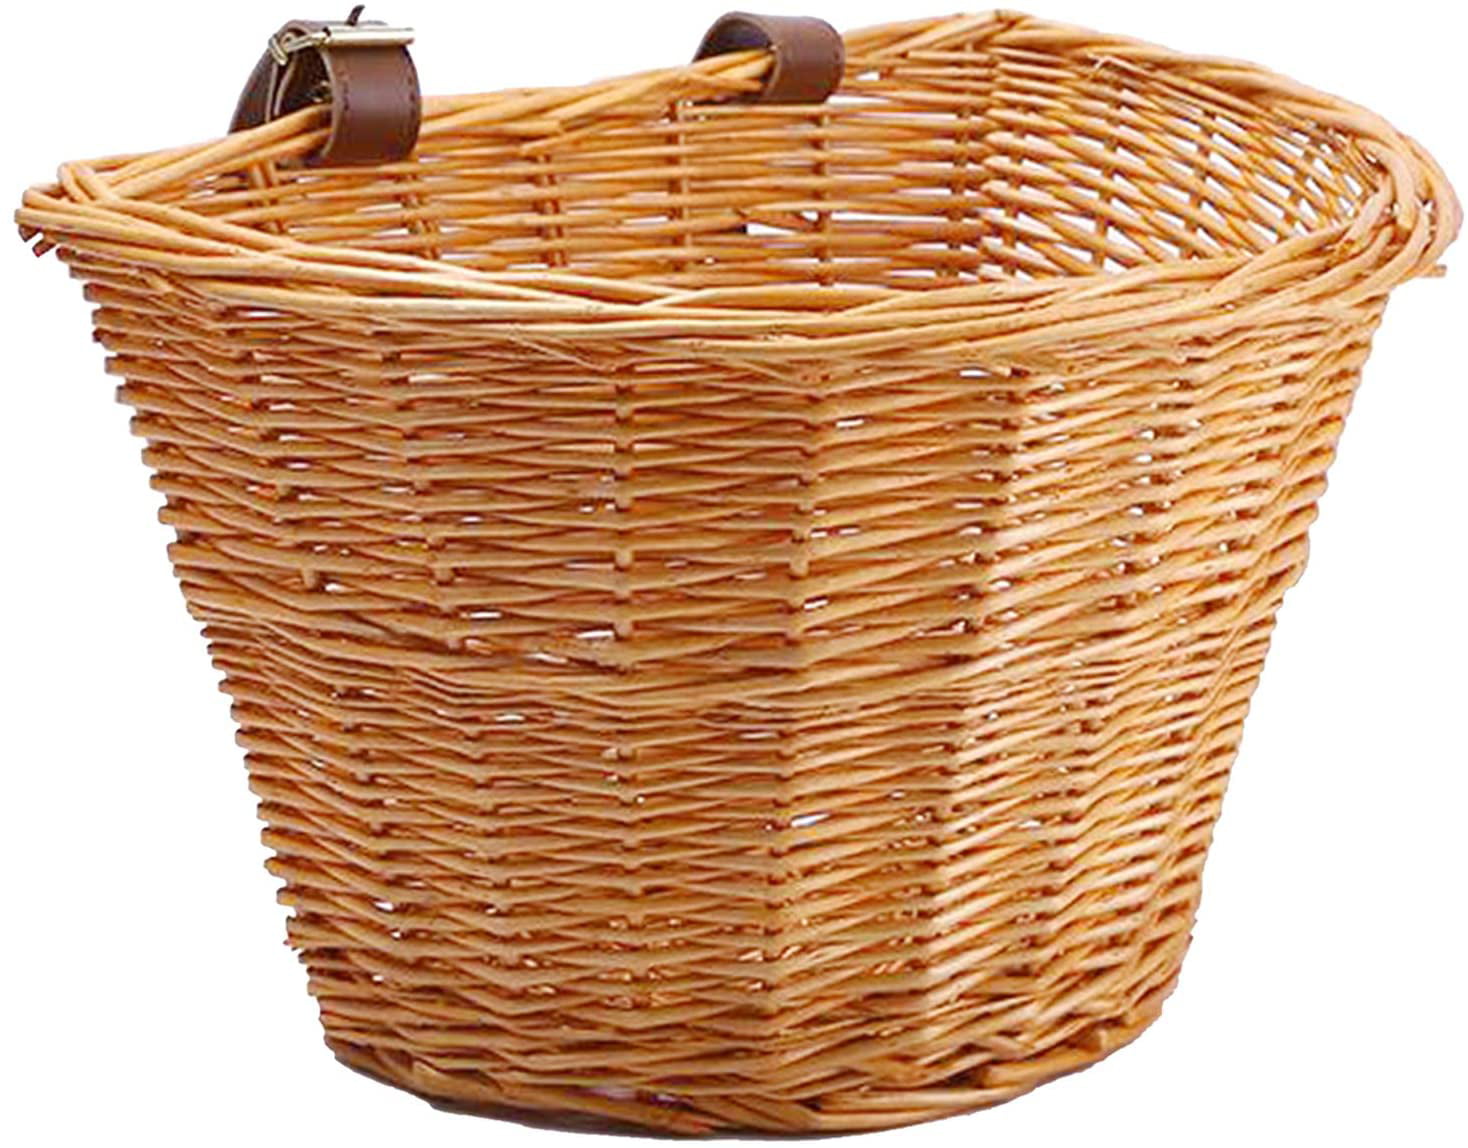 Willow Basket 10" x 10" x 8"H 